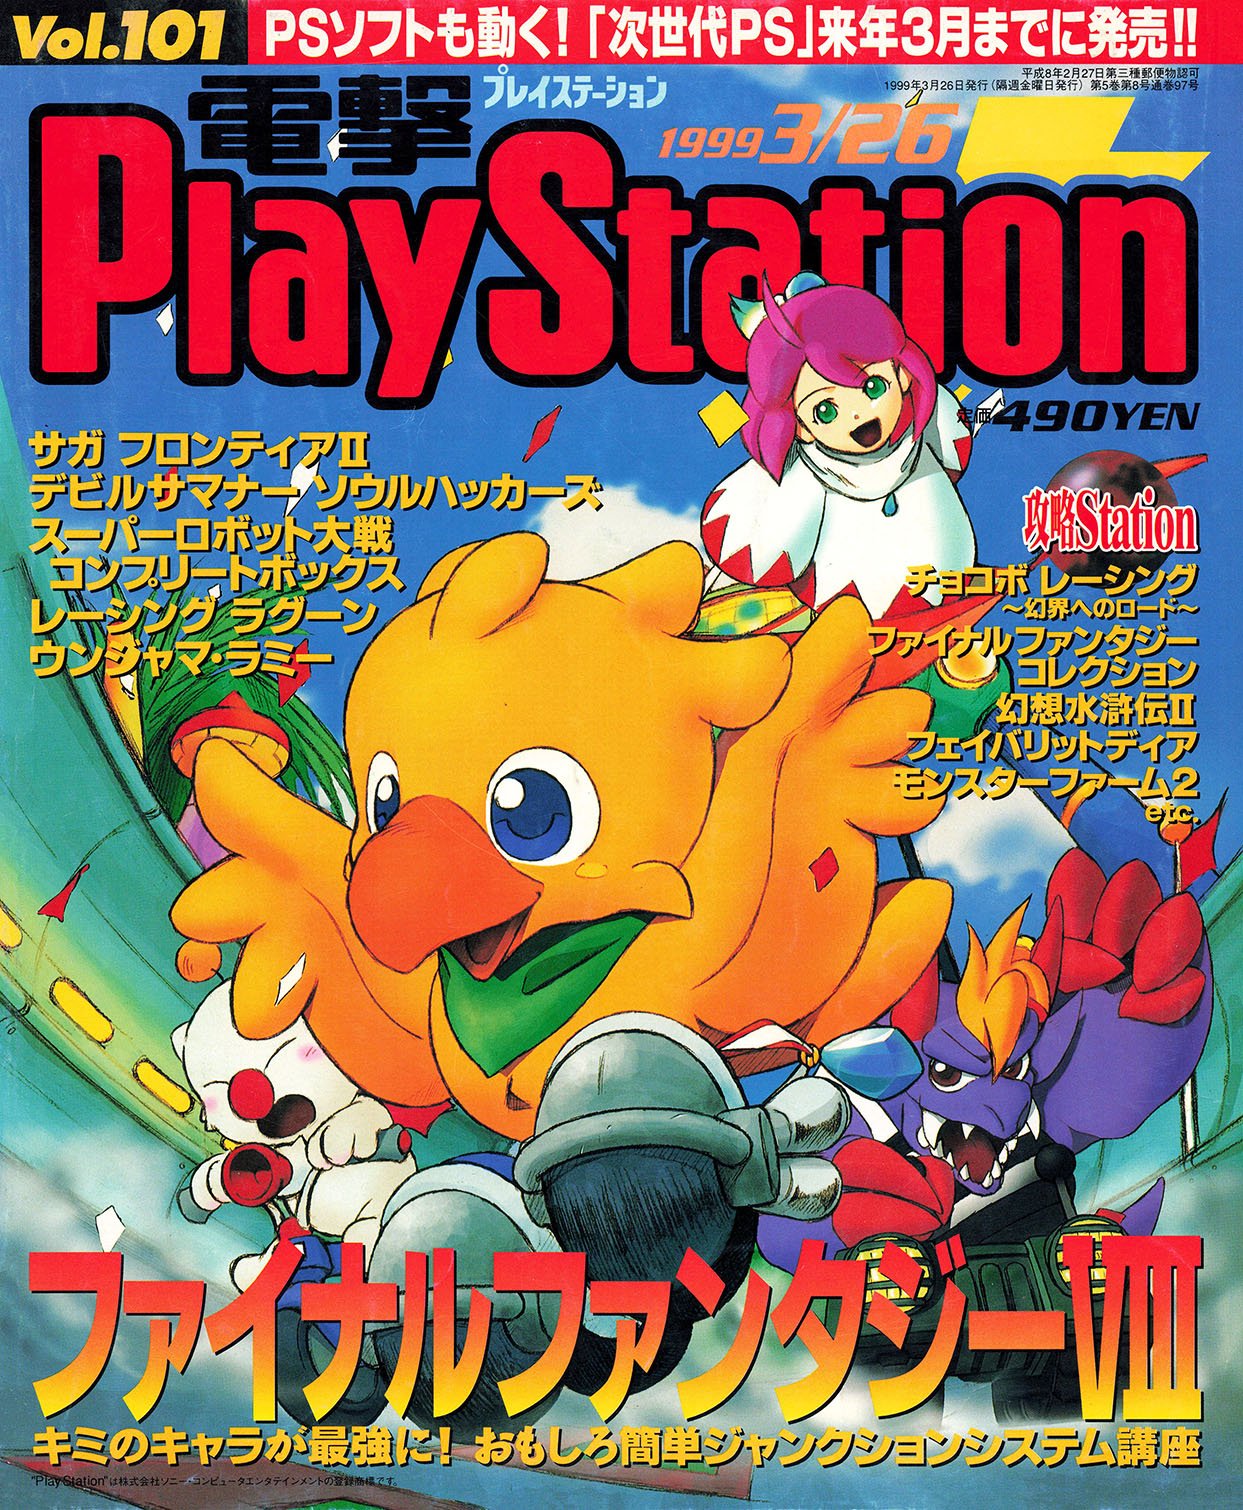 Dengeki PlayStation Vol.101 (March 26, 1999)